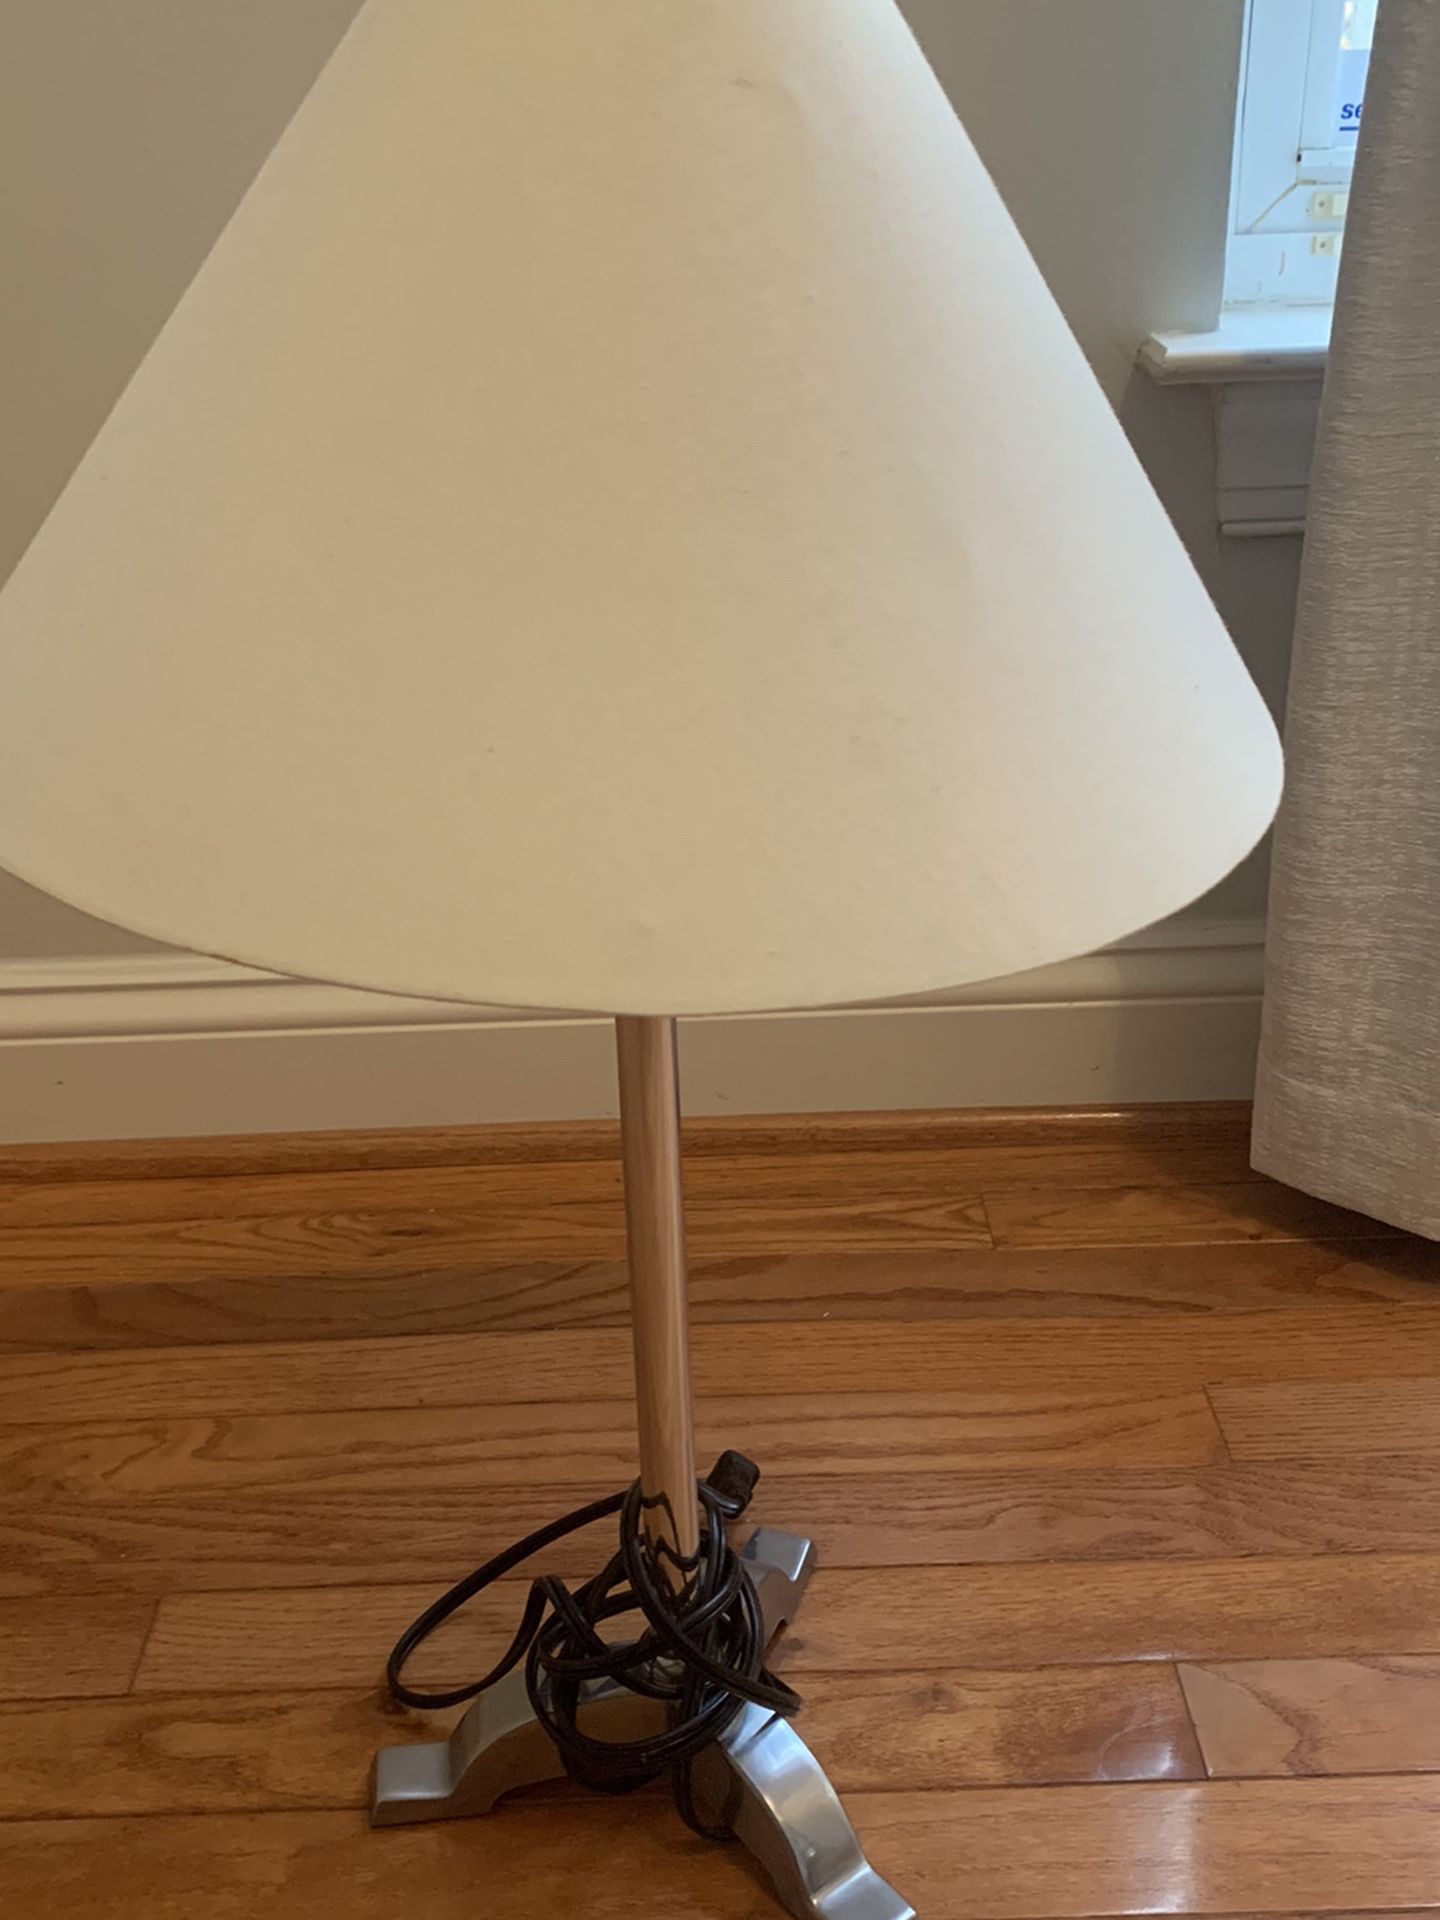 Lamp $6